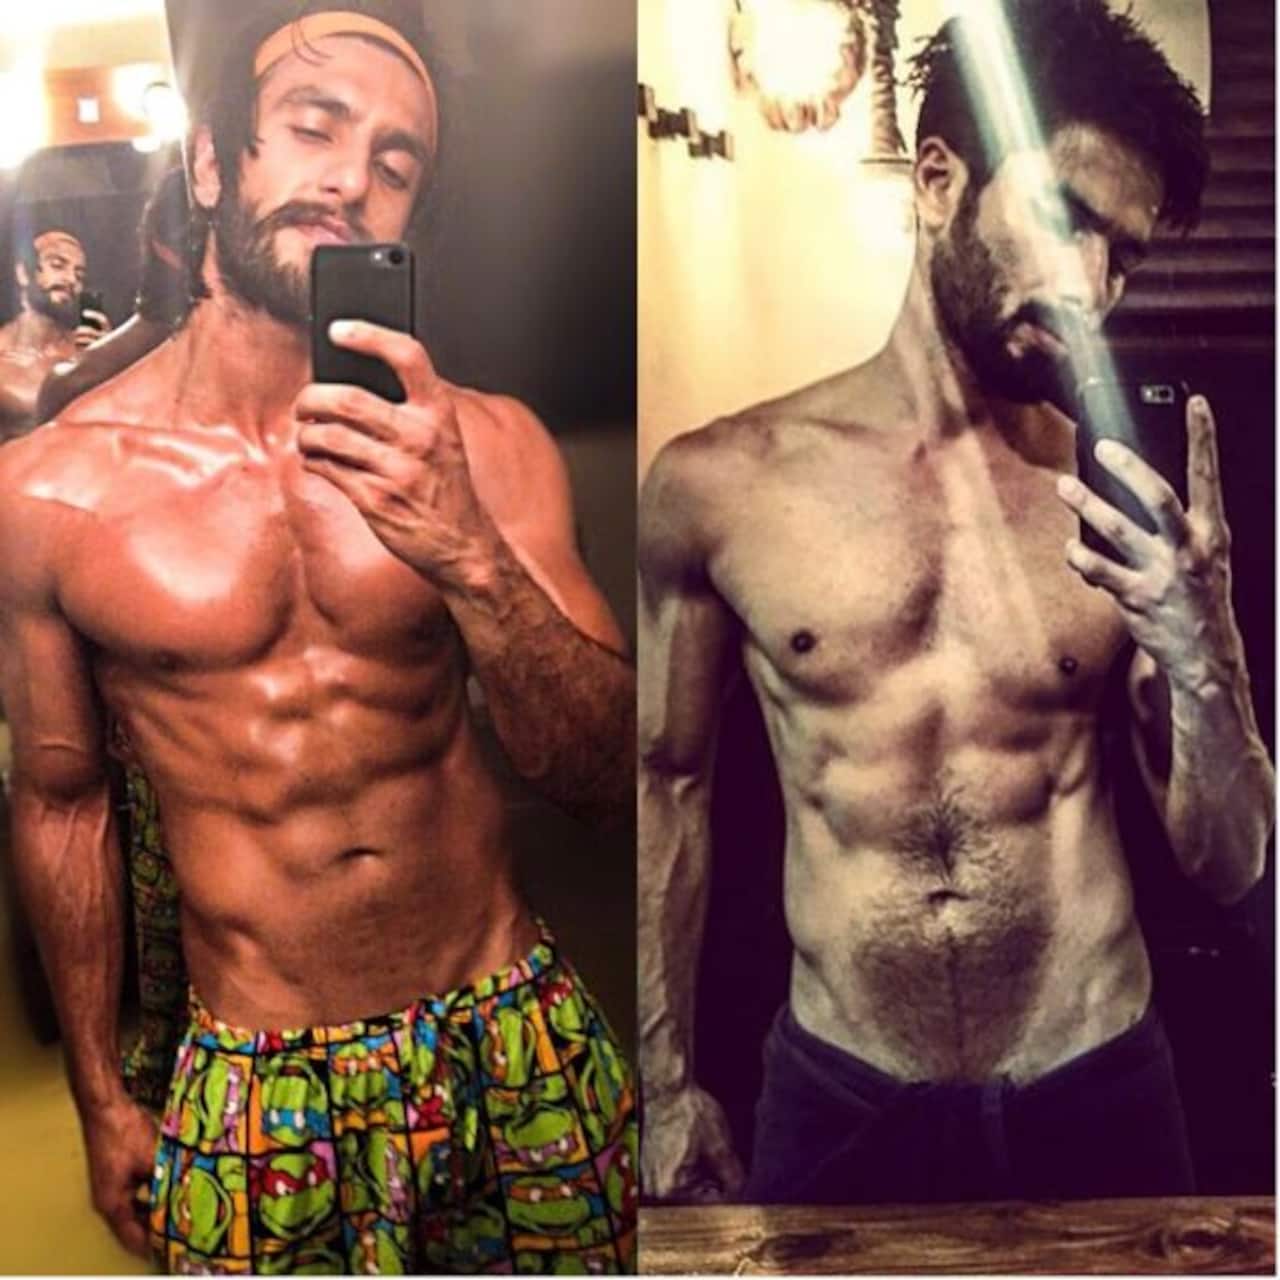 Ranveer Singh or Shahid Kapoor - whose mirror selfie is the hottest? Vote